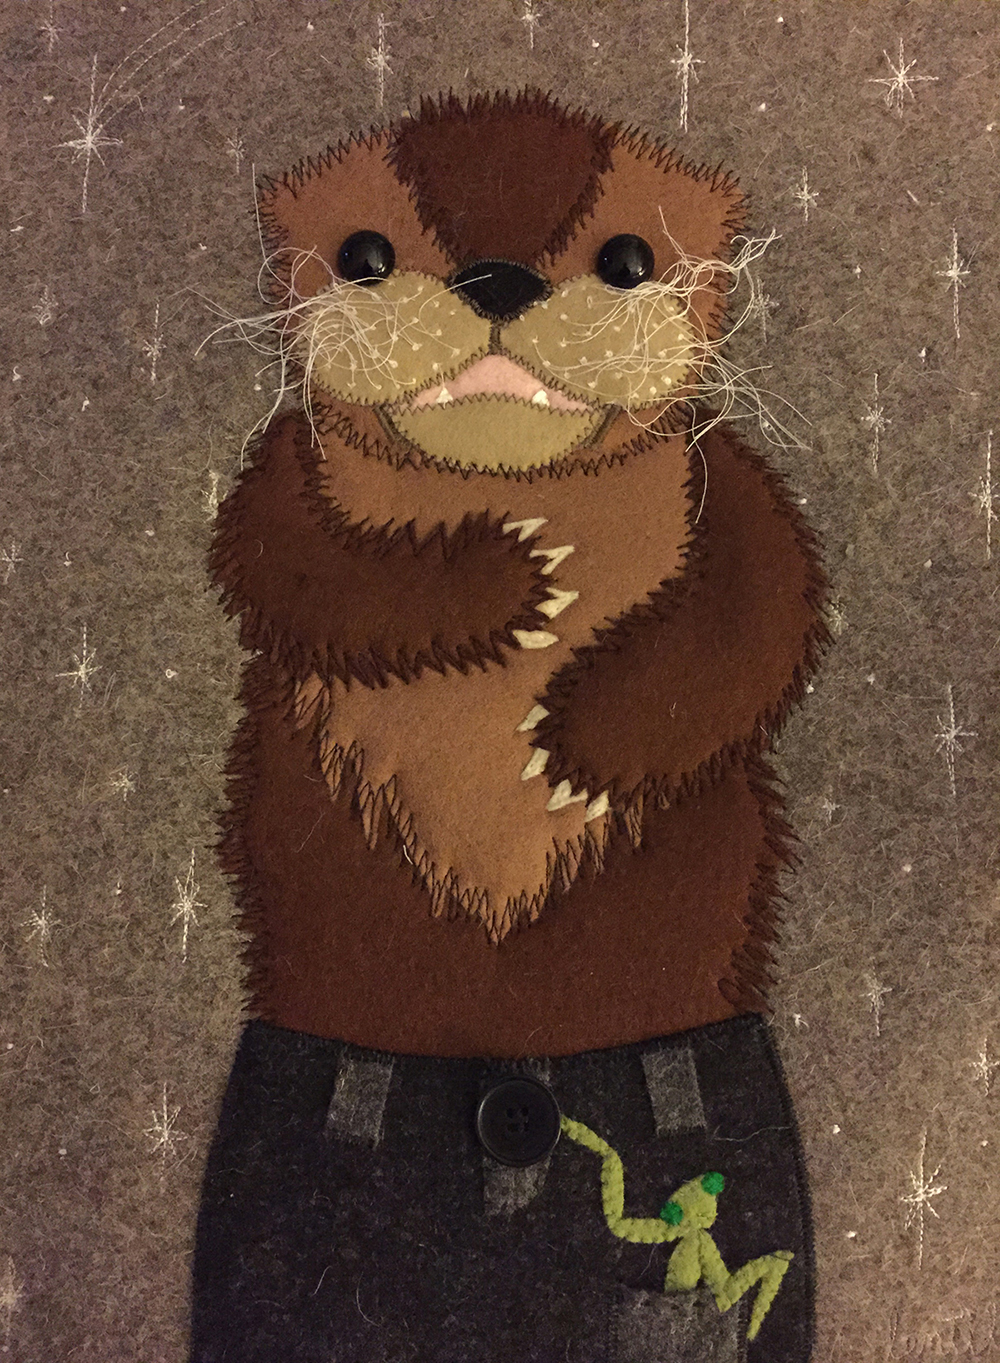 felt portrait of an otter